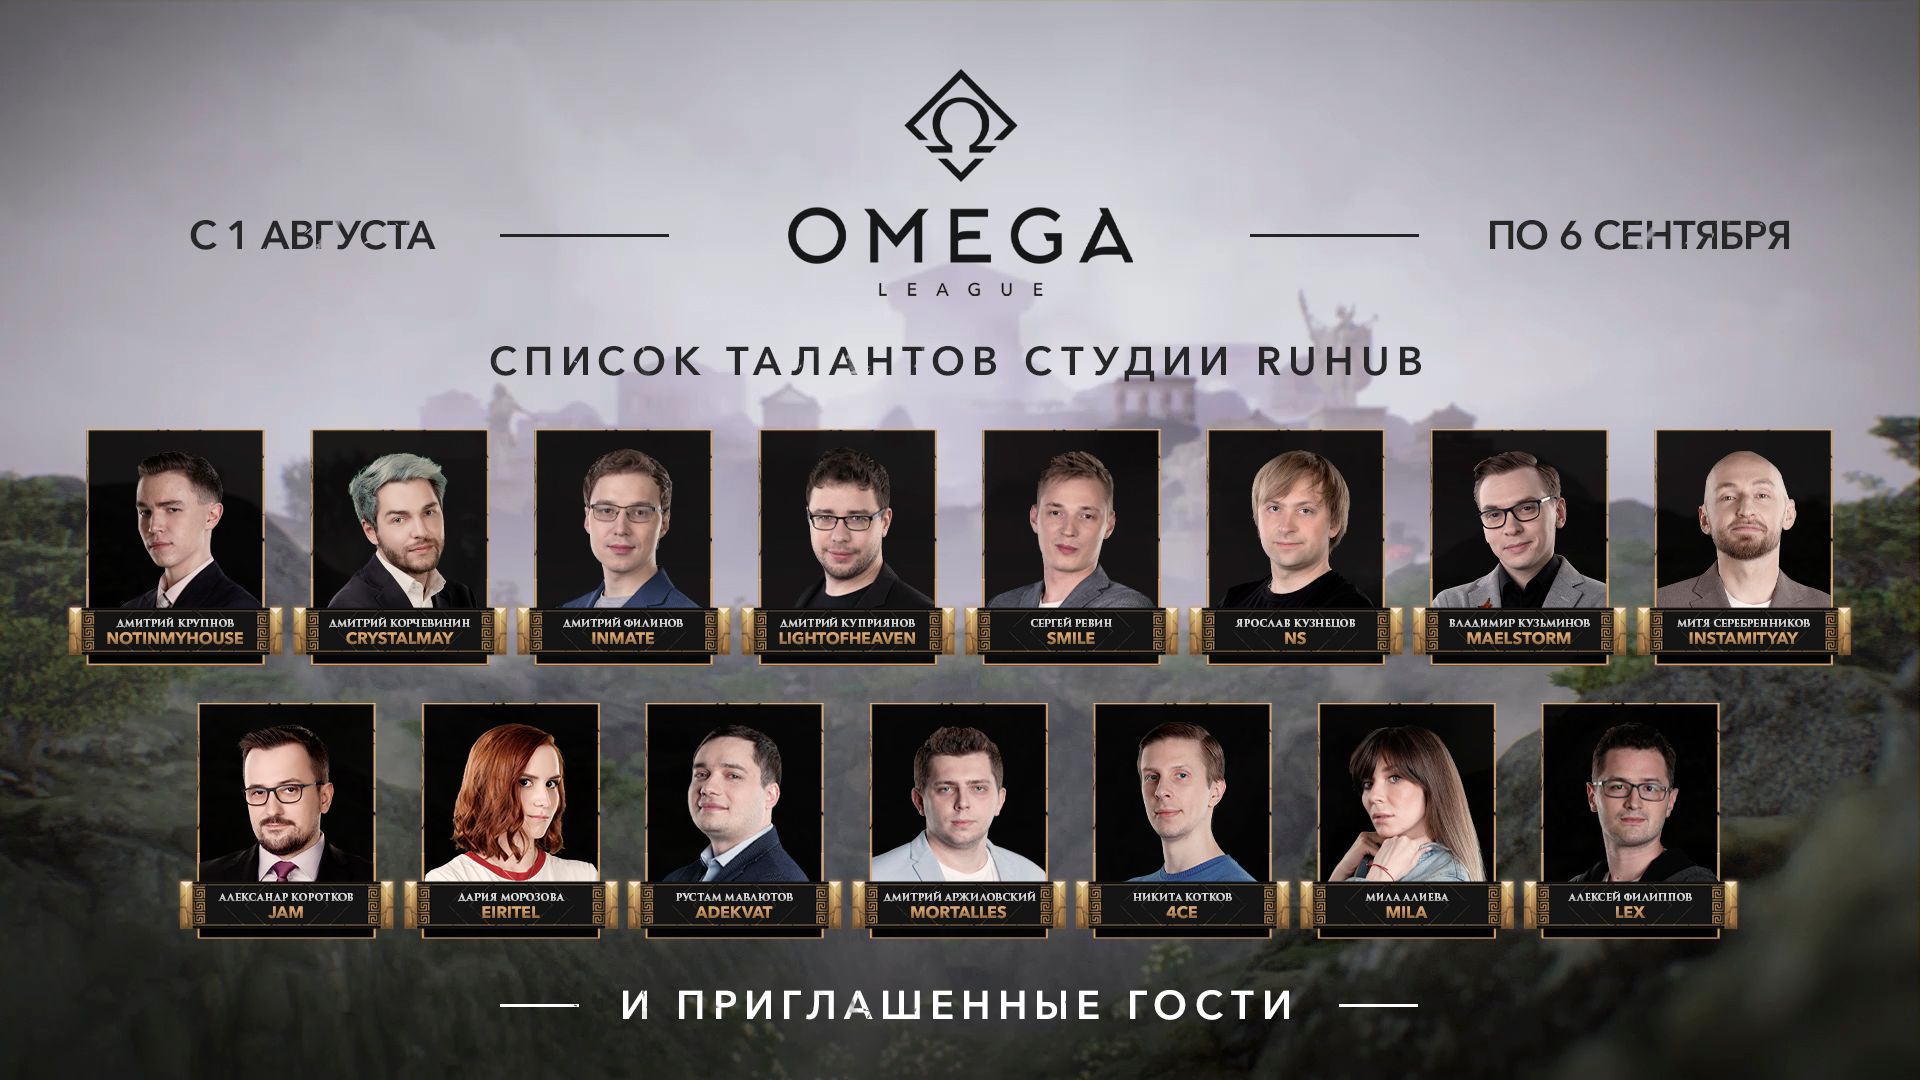 Русскоязычная студия освещения OMEGA League.
Источник: Epic Esports Events